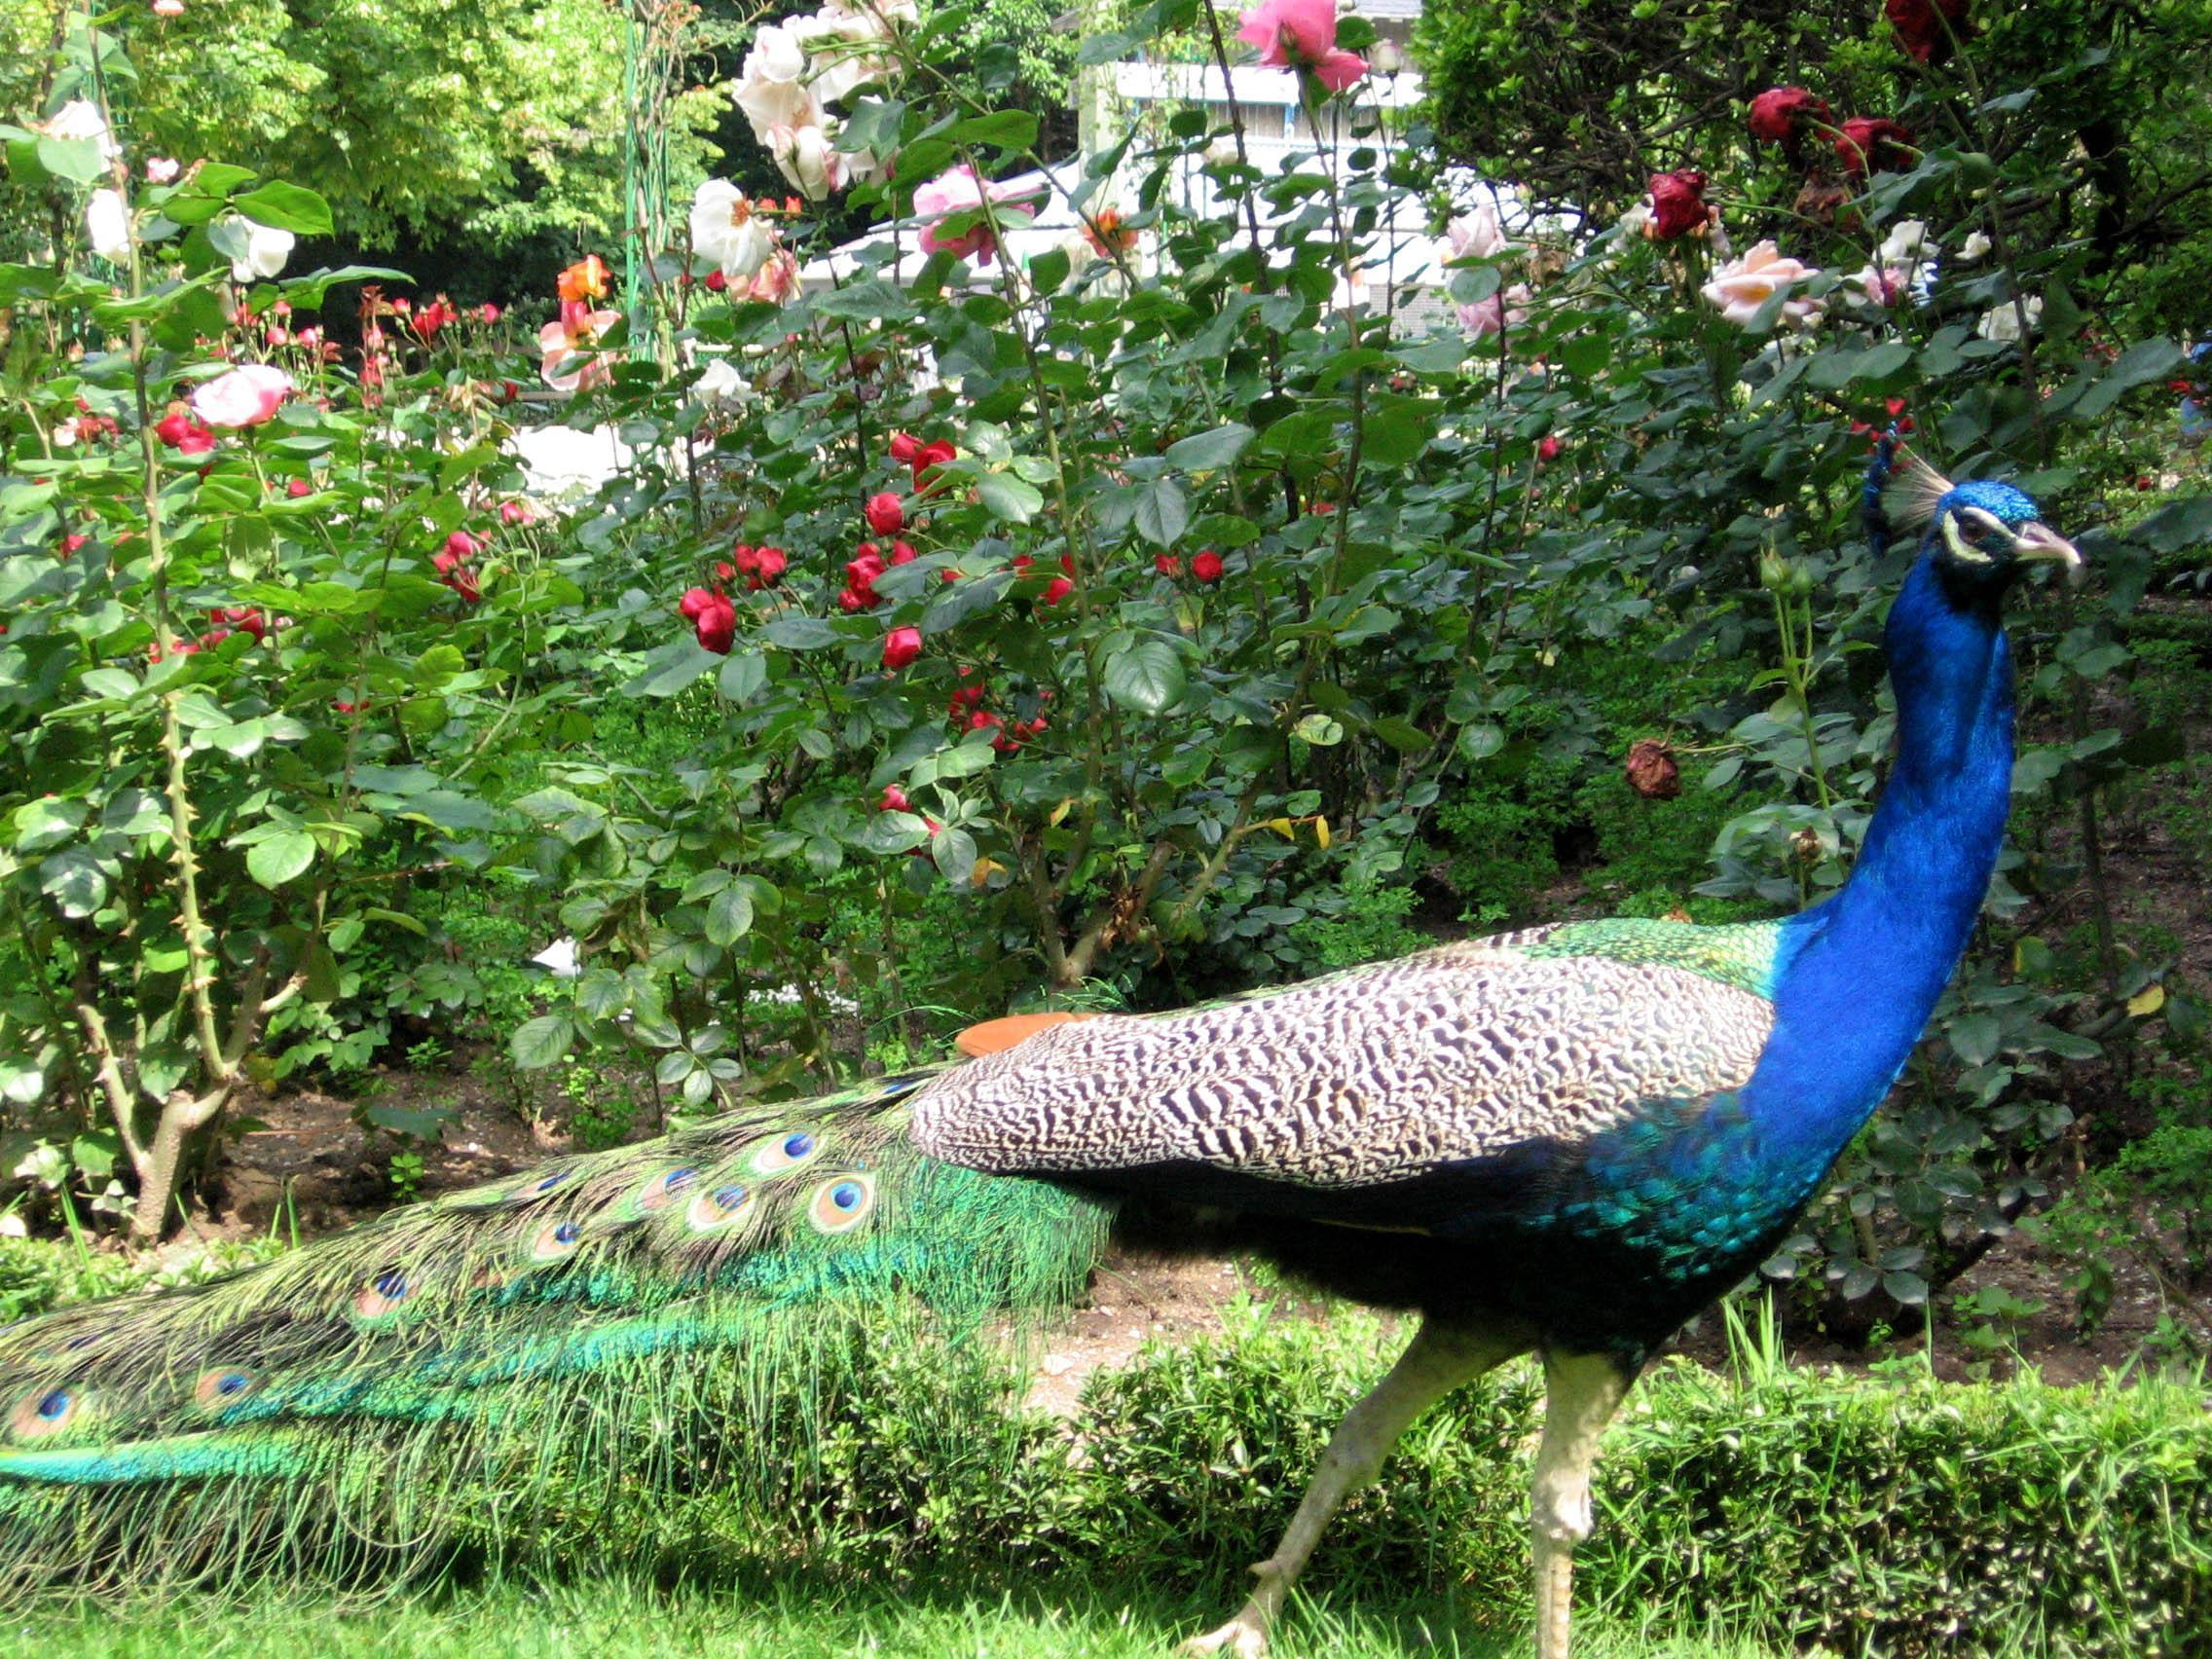 A peacock in the rose garden of Campo Grande.